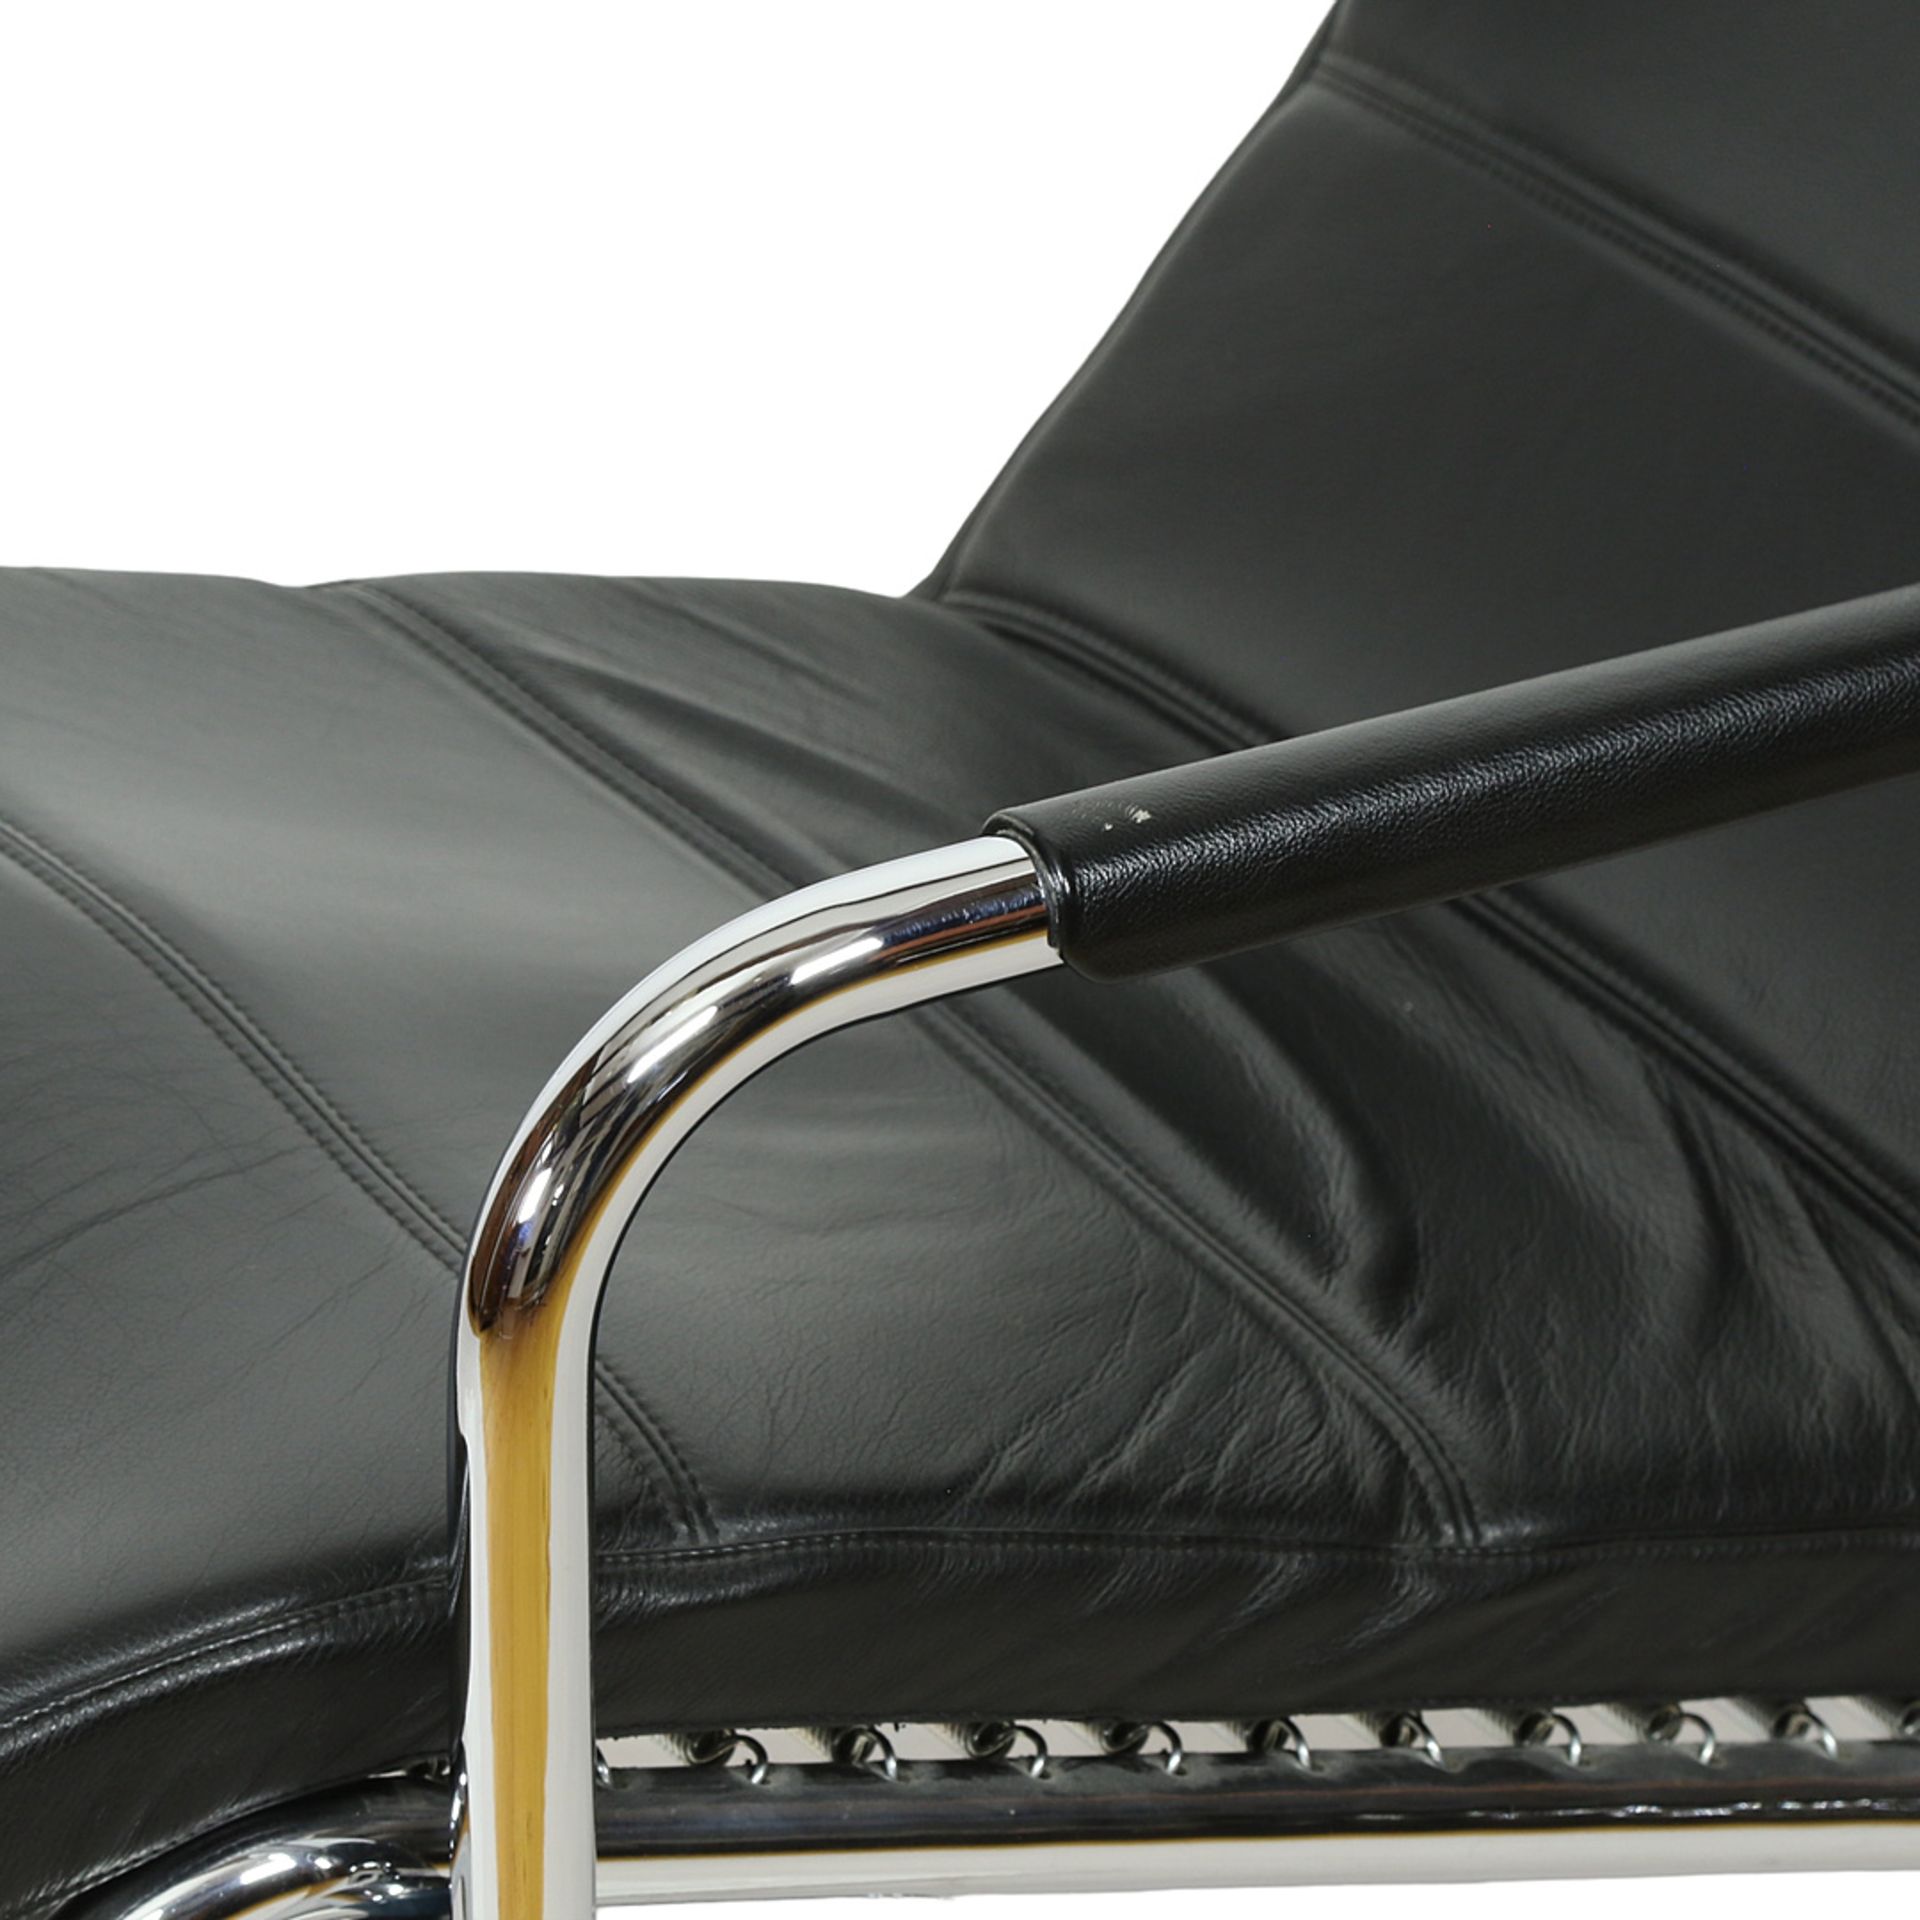 Chaiselongue mit Hocker, Stahl verchromt, schwarzer Lederbezug - Bild 6 aus 9